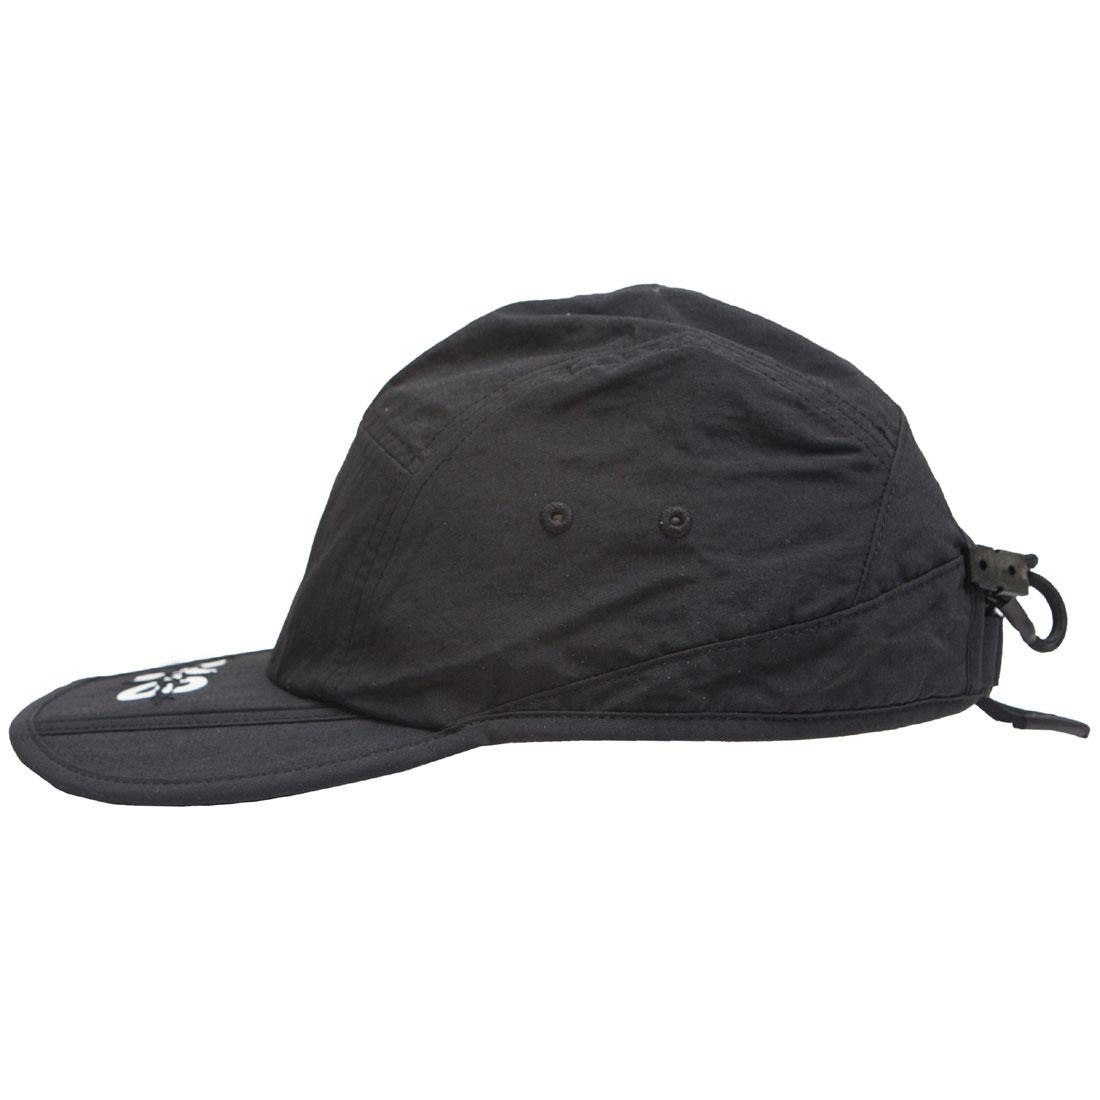 y3 black cap